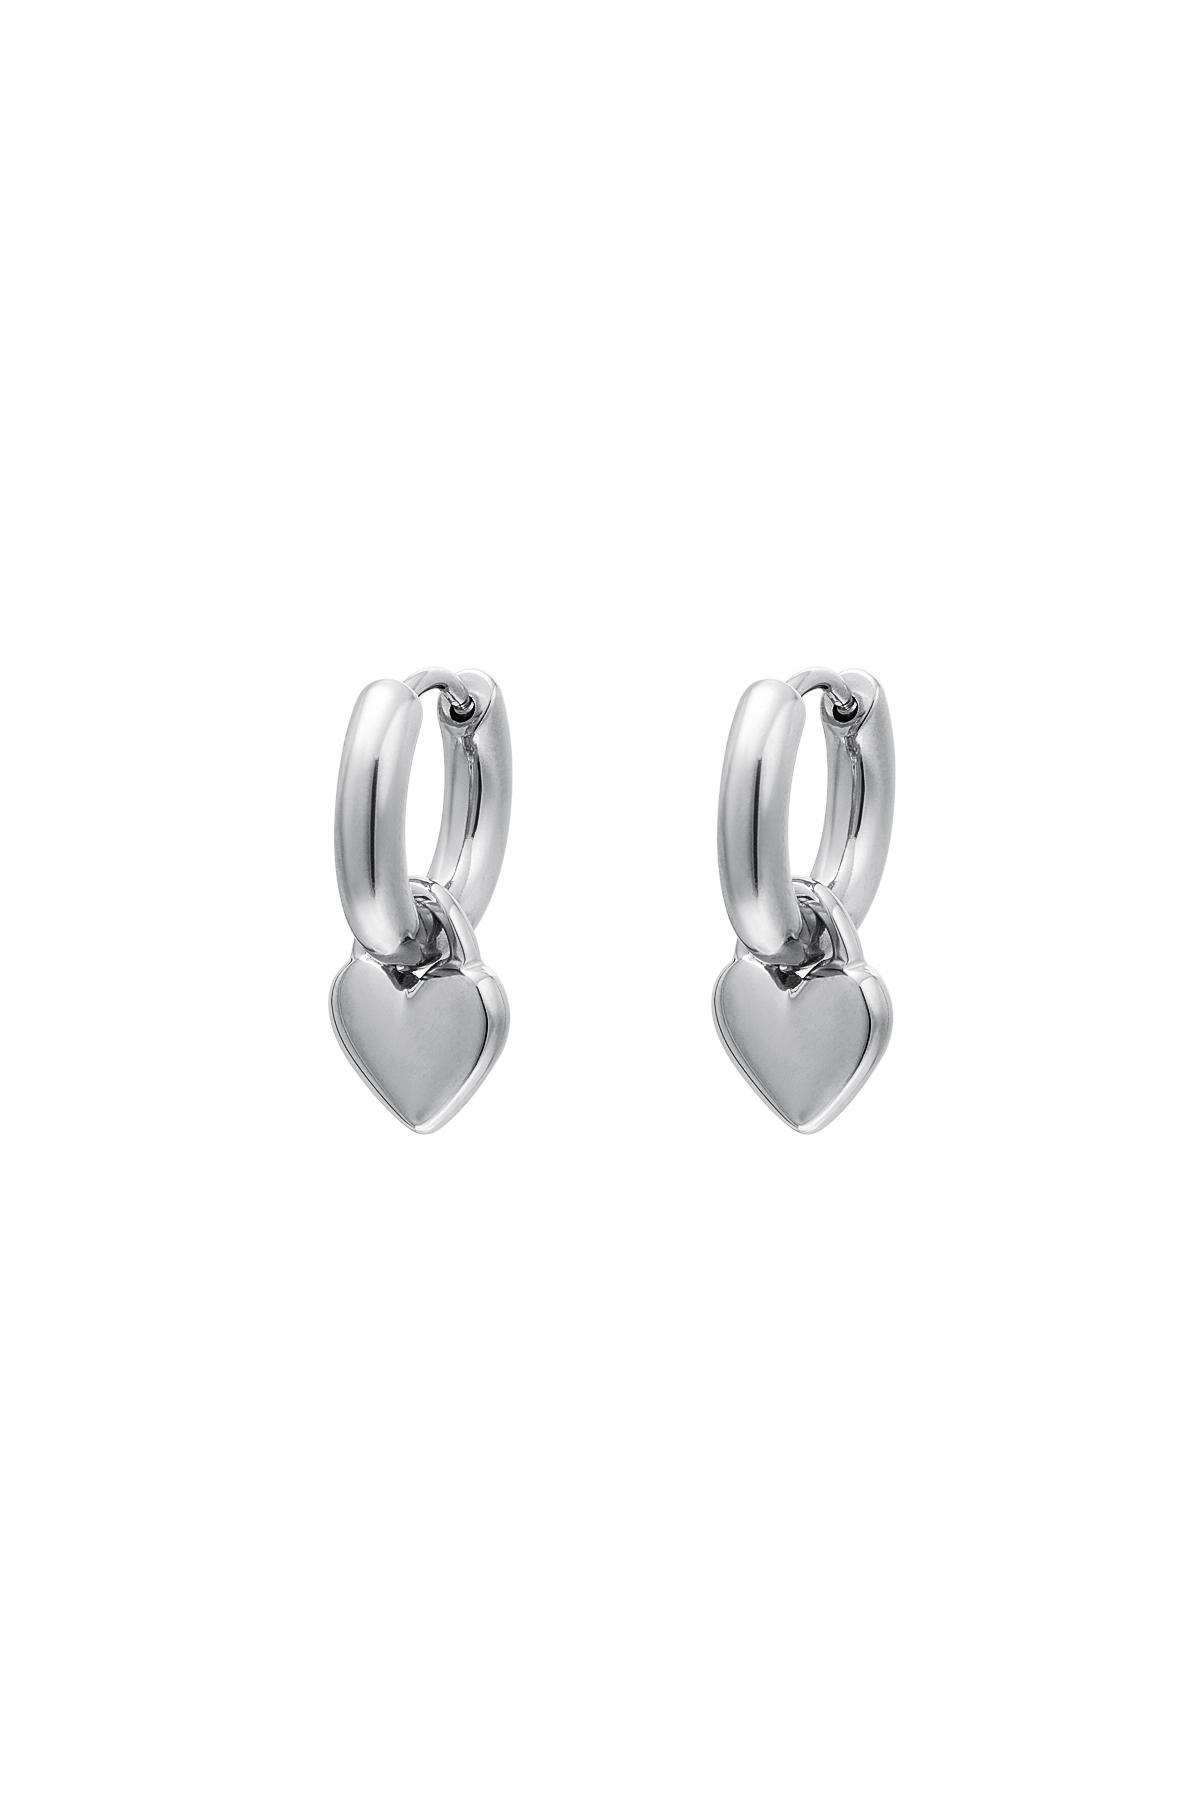 Heart earrings Silver Stainless Steel h5 